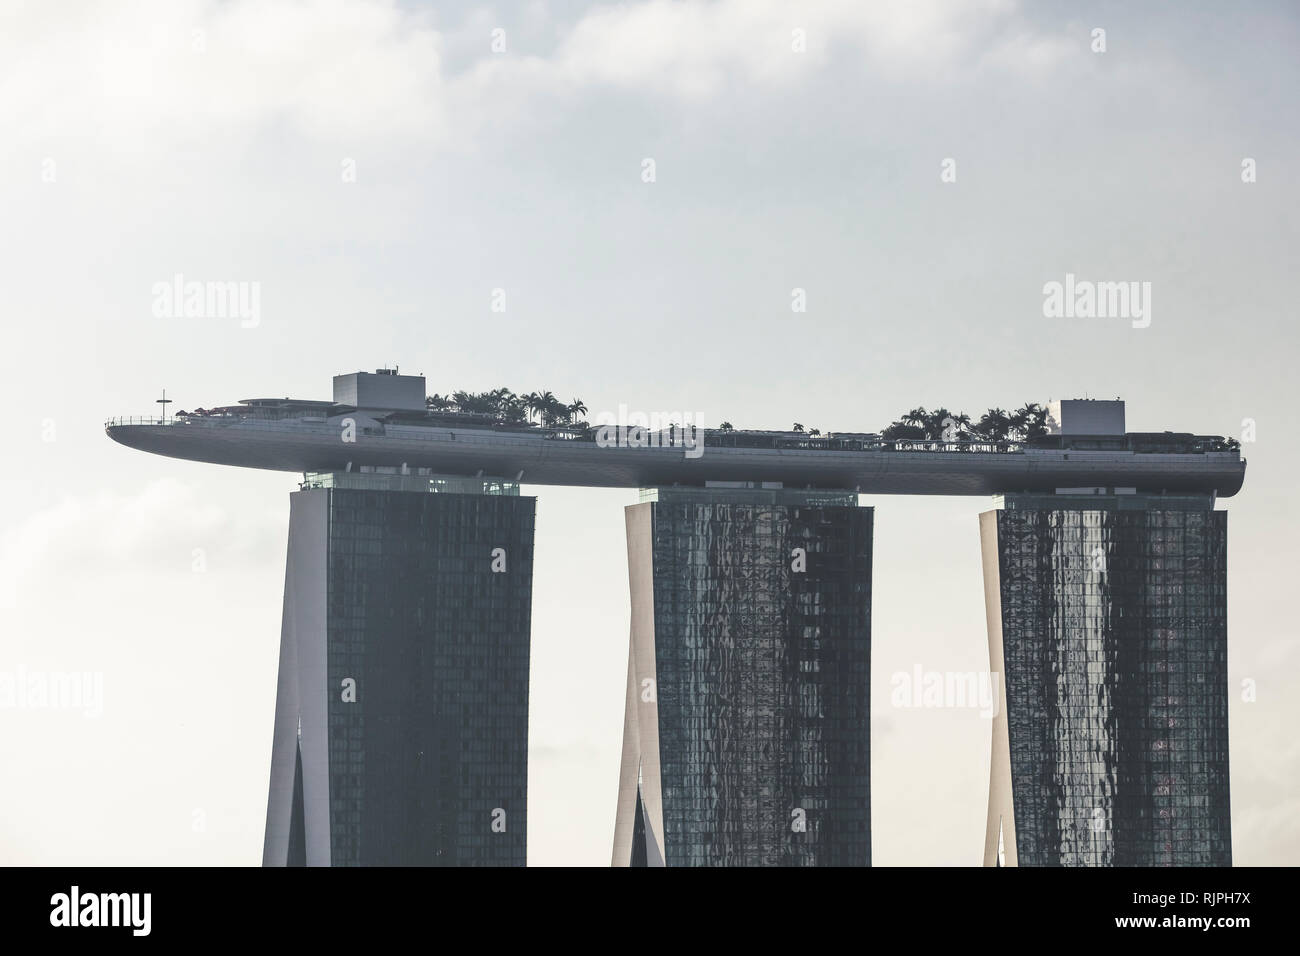 Singapur Marina Bay Sands Hotel y Esplanade Theatres on the Bay cerrar detalles arquitectónicos vista aérea durante el claro cielo de día Foto de stock